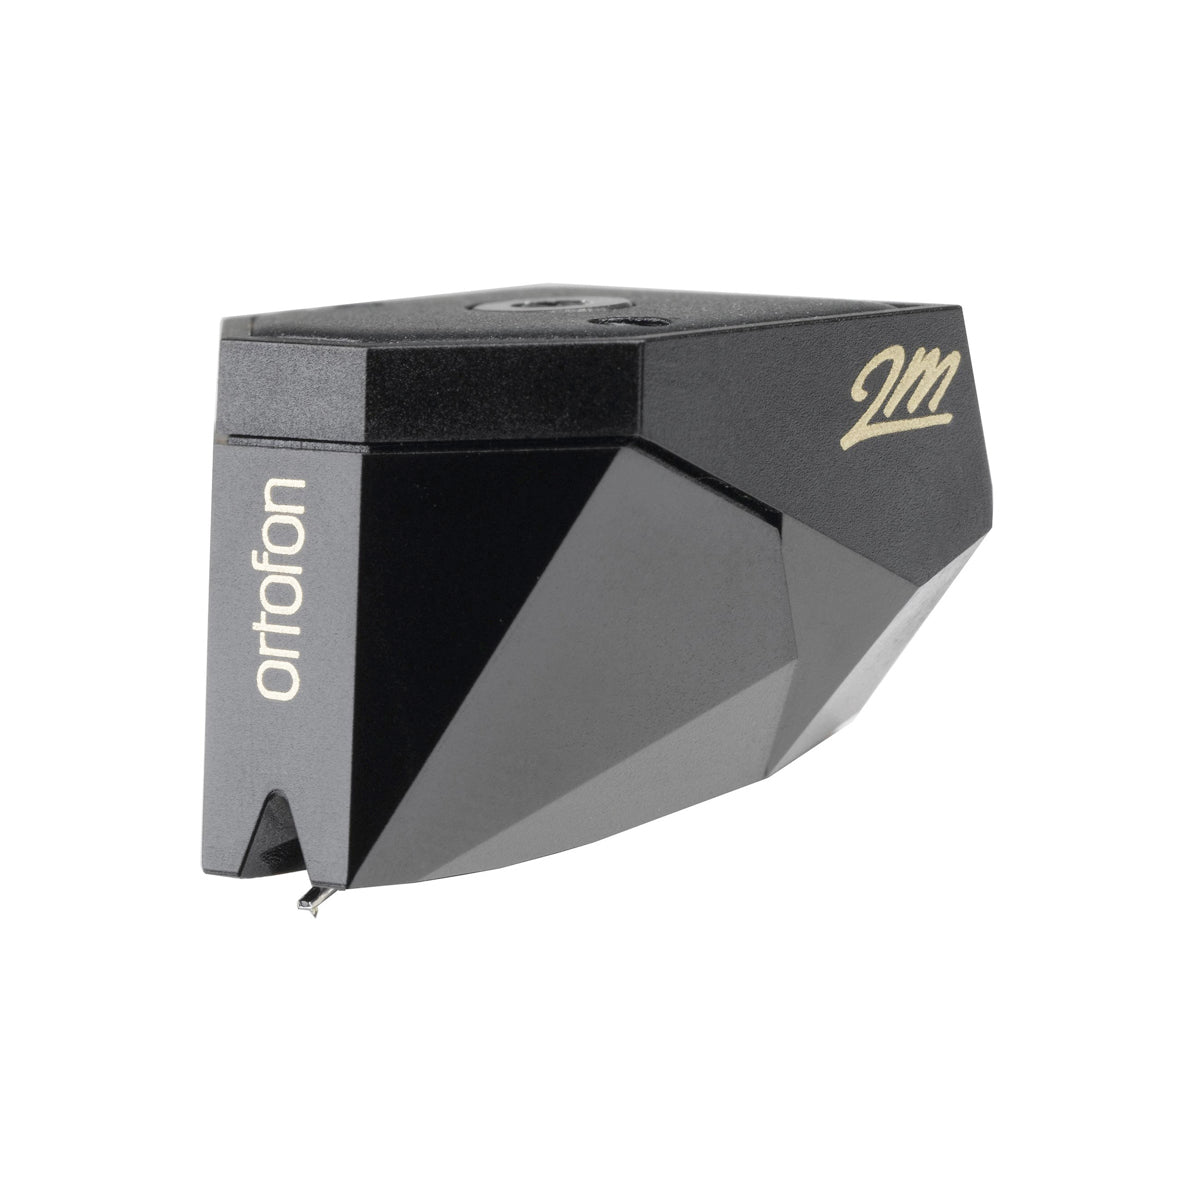 Ortofon Hi-Fi 2M Black Moving Magnet Cartridge - The Audio Experts